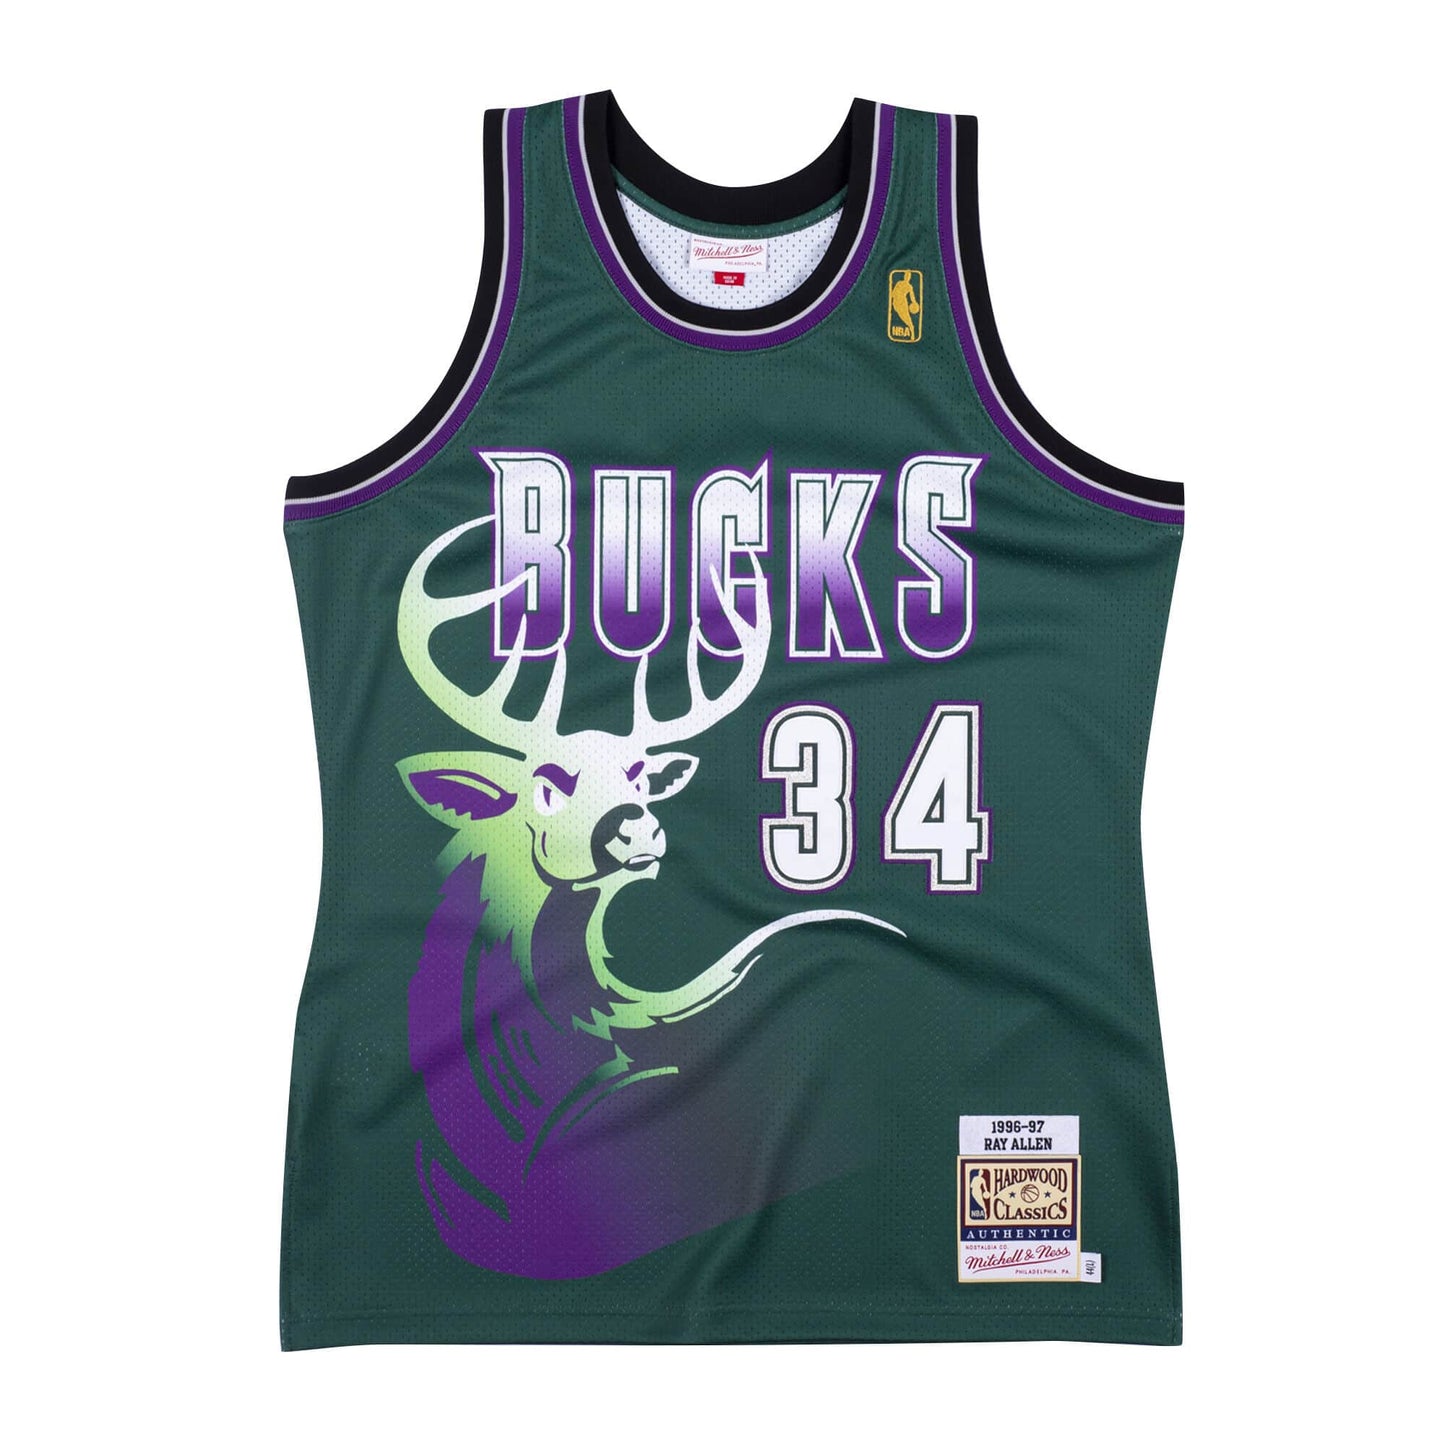 Authentic Jersey Milwaukee Bucks Alternate 1996-97 Ray Allen